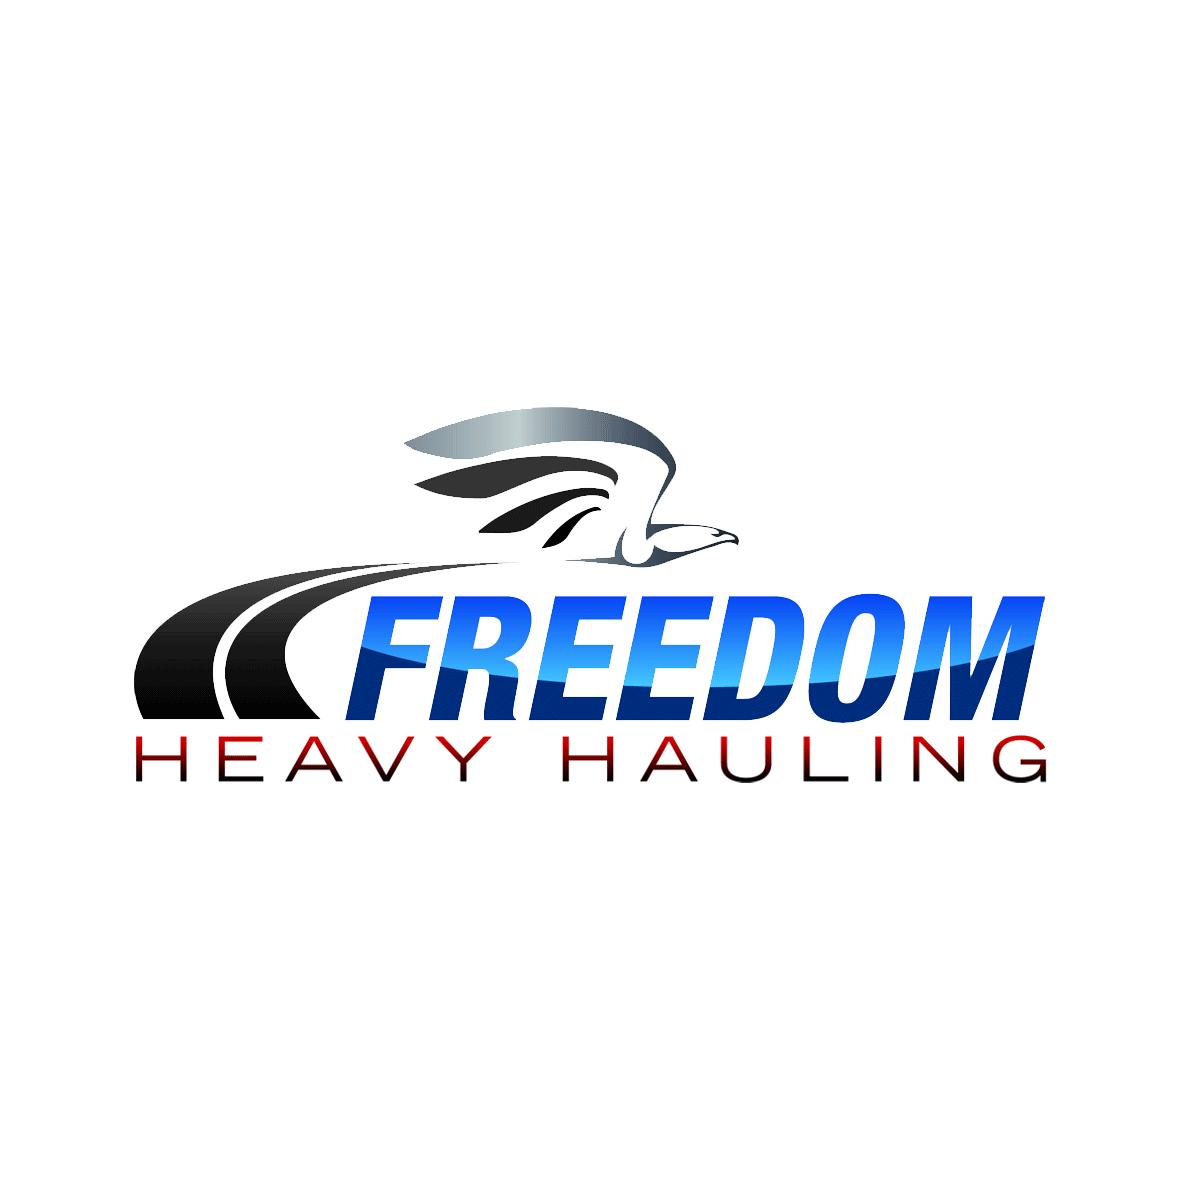 Freedom Heavy Haul